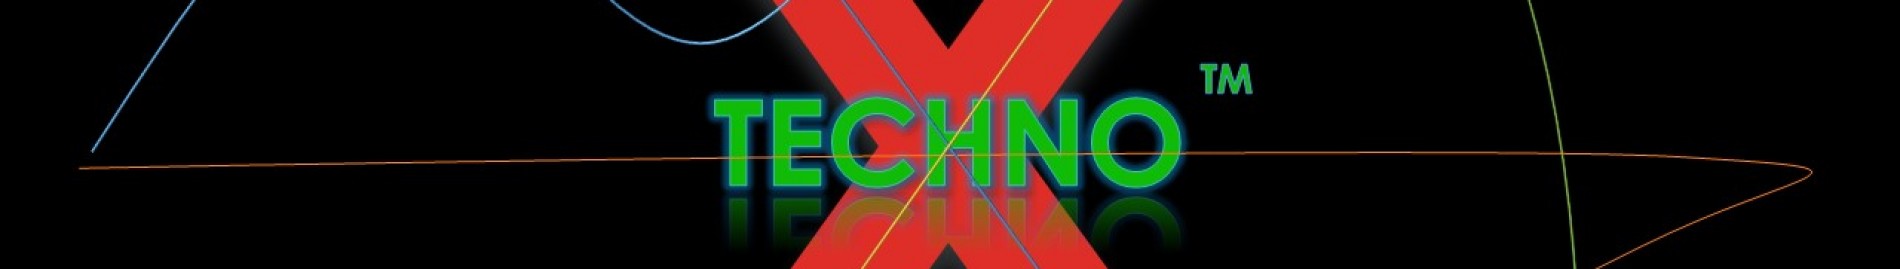 Techno_X